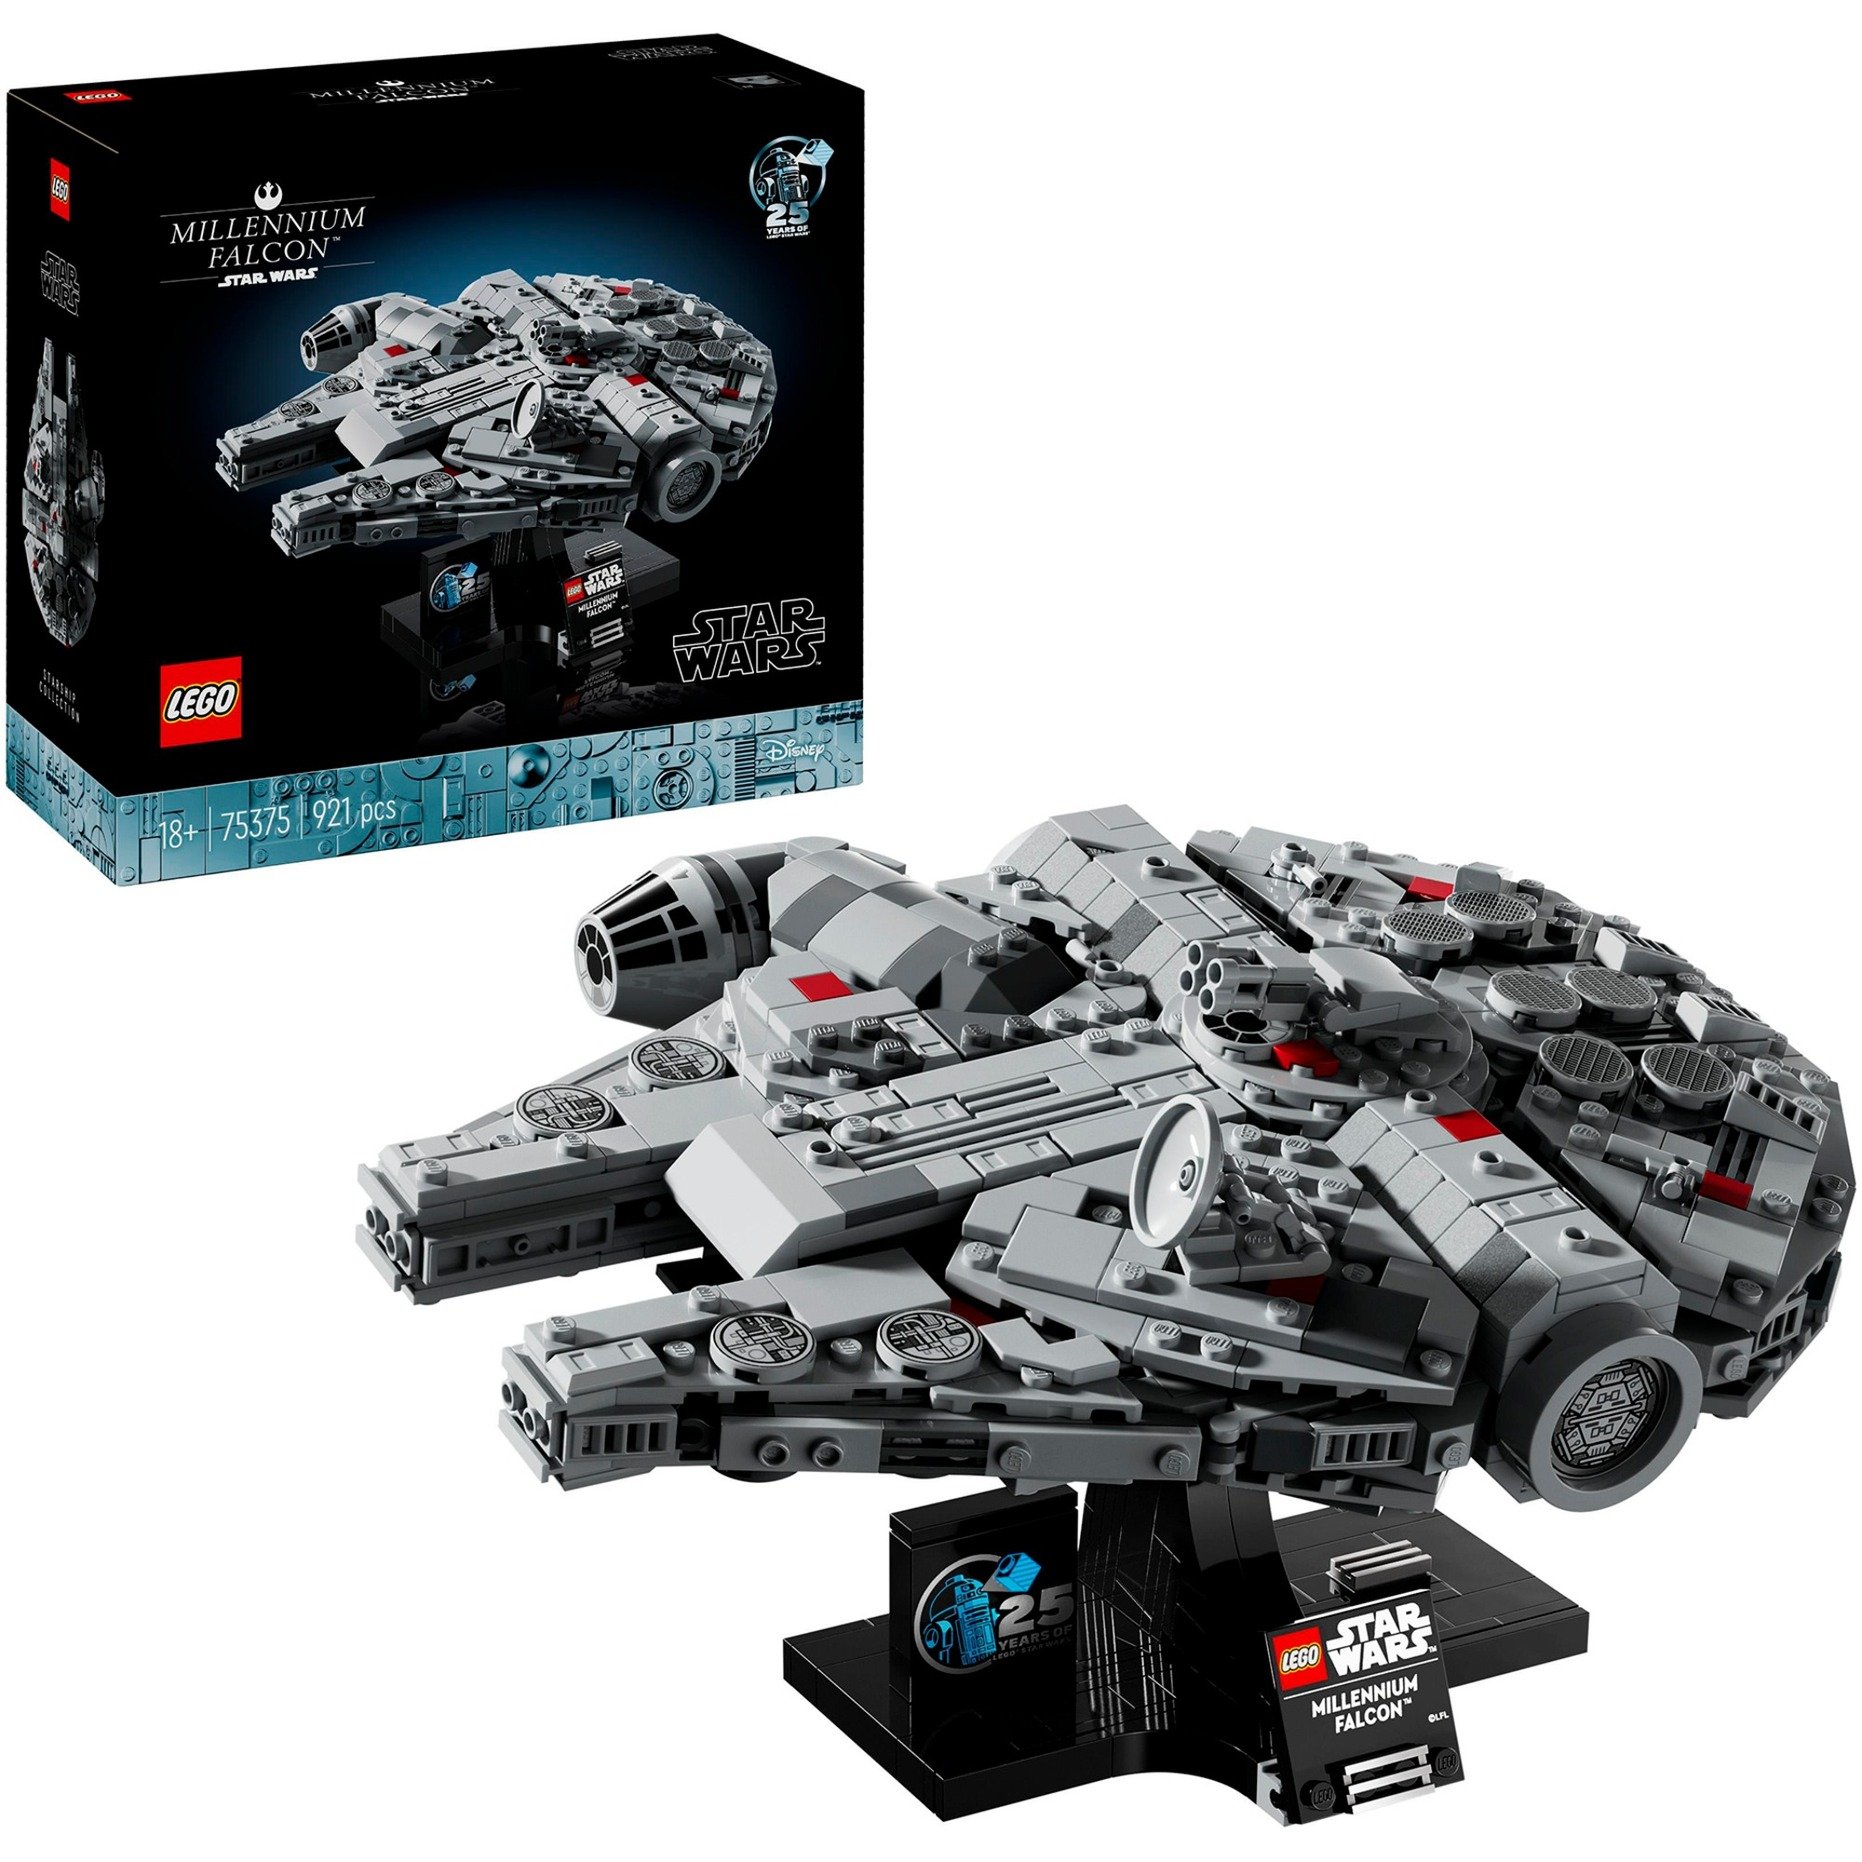 75375 Star Wars Millennium Falcon, Konstruktionsspielzeug von Lego